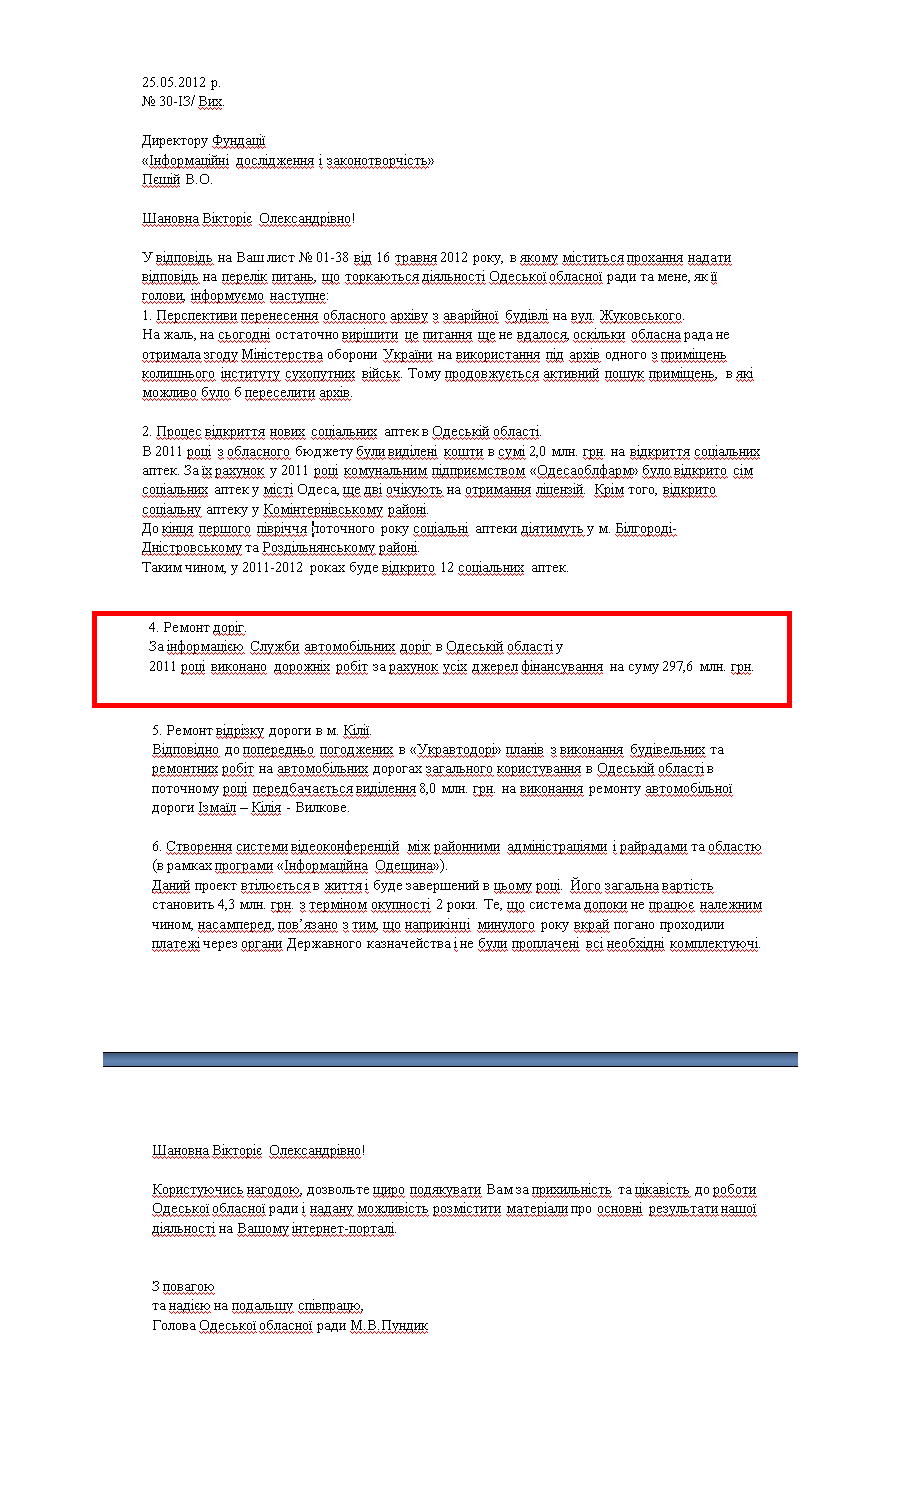 Лист від Голови Одеської обласної ради М.В.Пундика